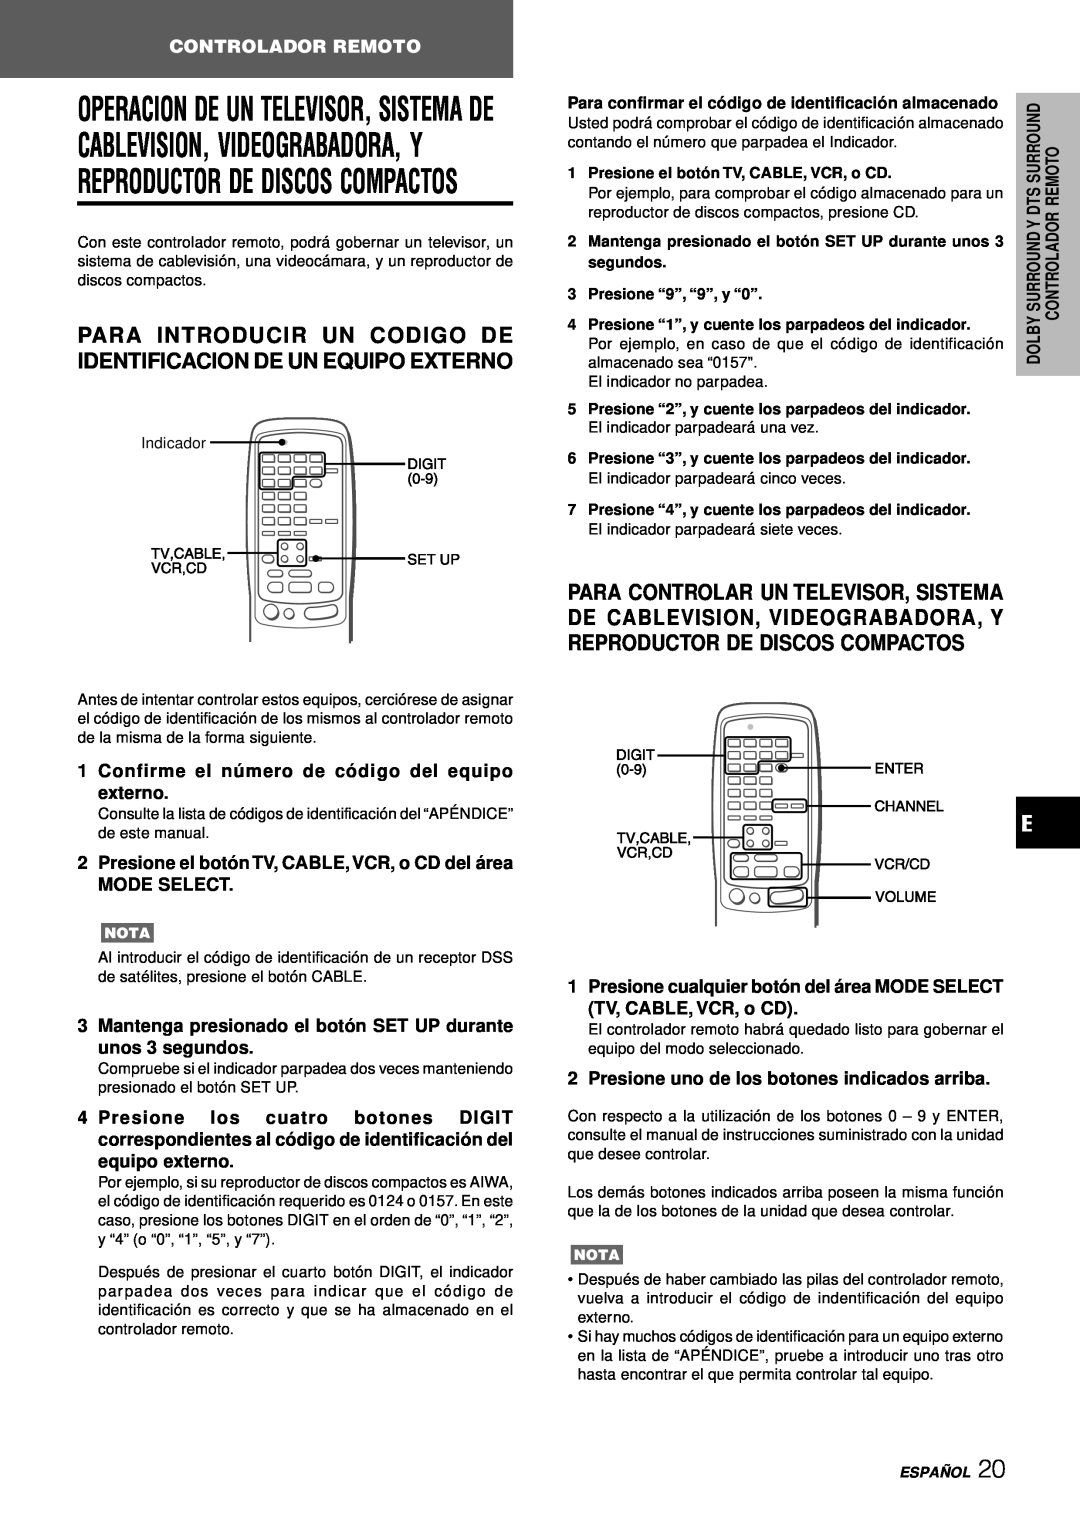 Aiwa AV-D97 manual Para Introducir Un Codigo De Identificacion De Un Equipo Externo, Controlador Remoto, segundos, Españ Ol 